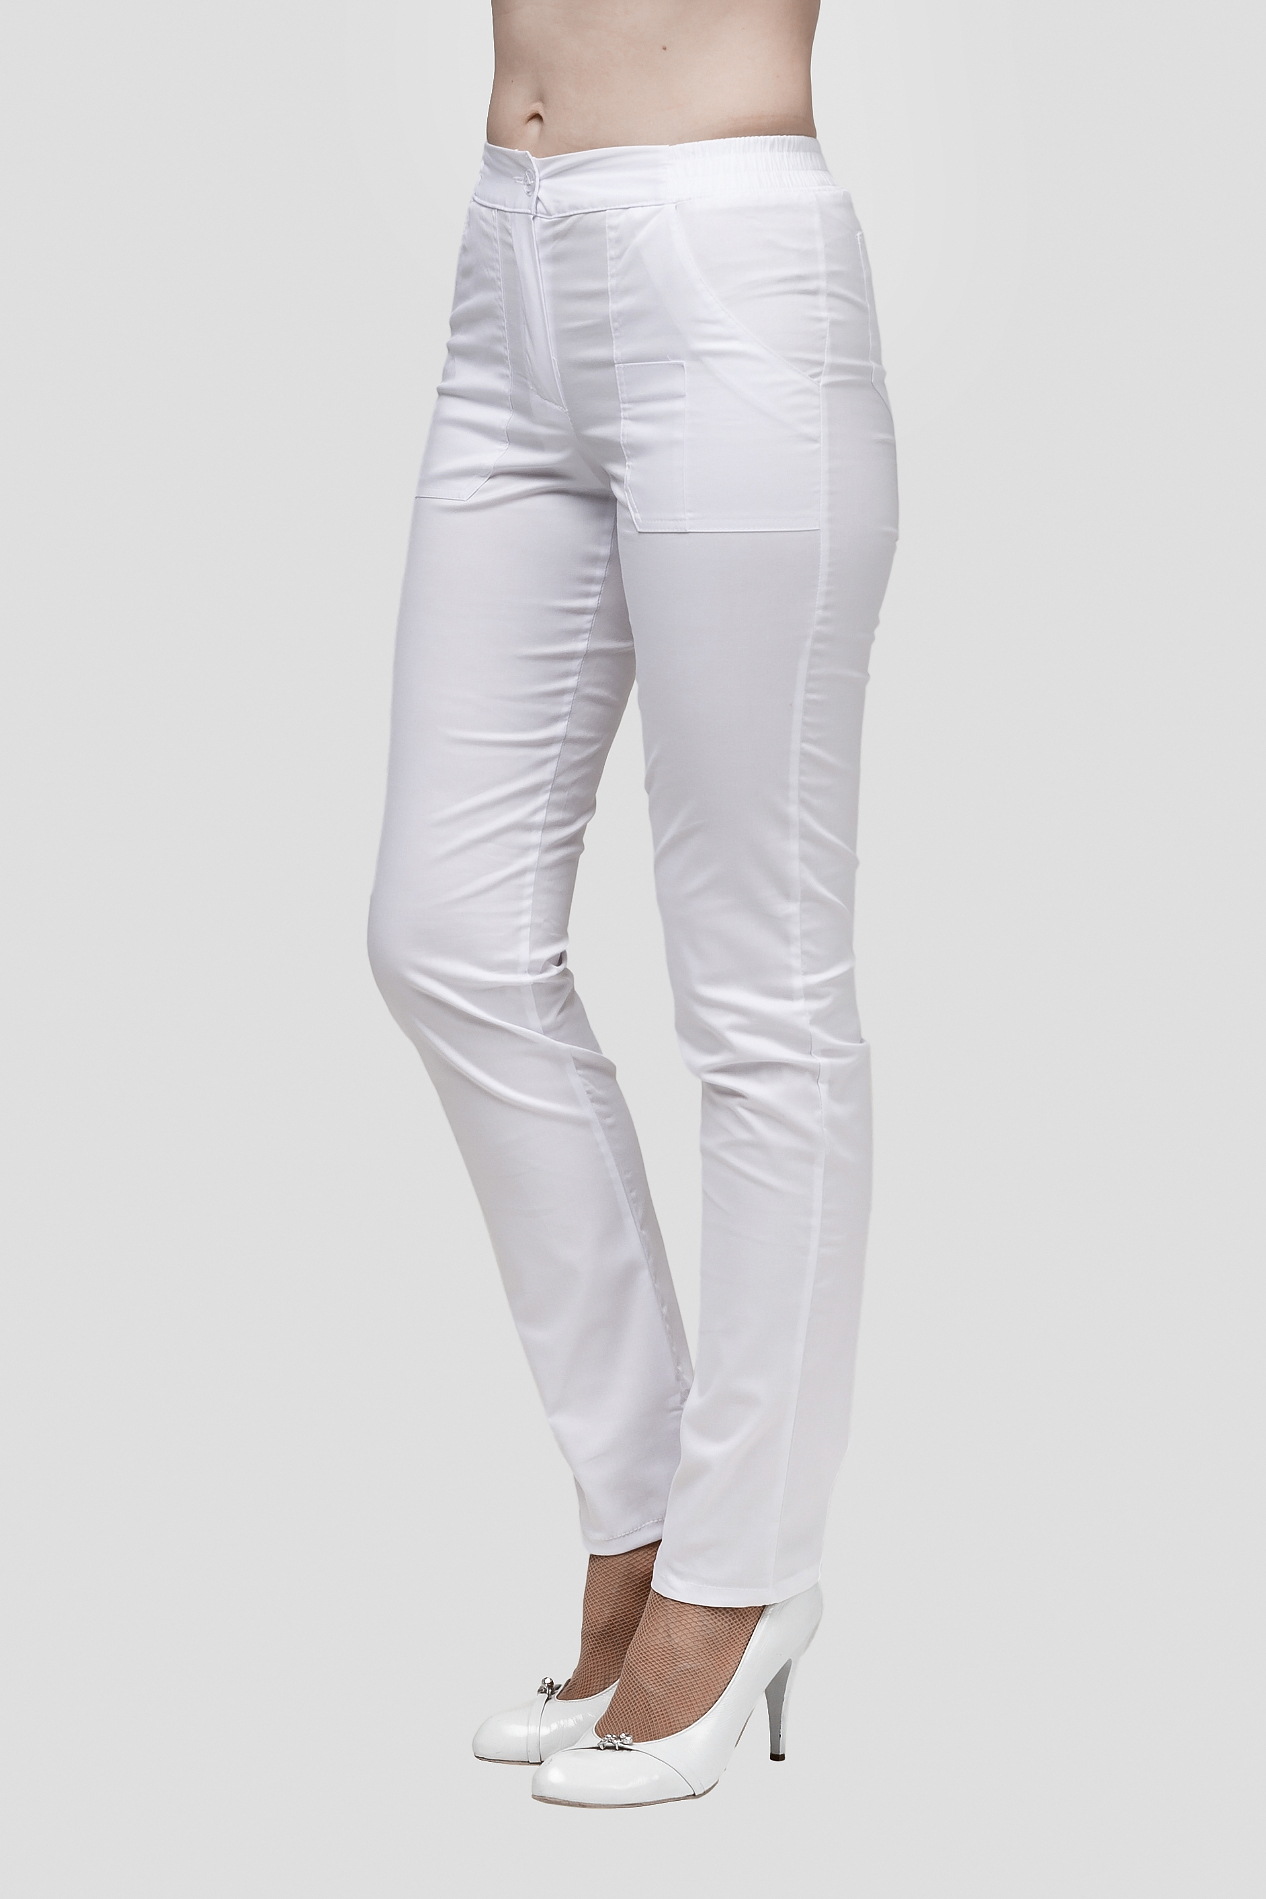 Медицинские брюки В-06.3 (белый, Стрейч) - Белый Стиль